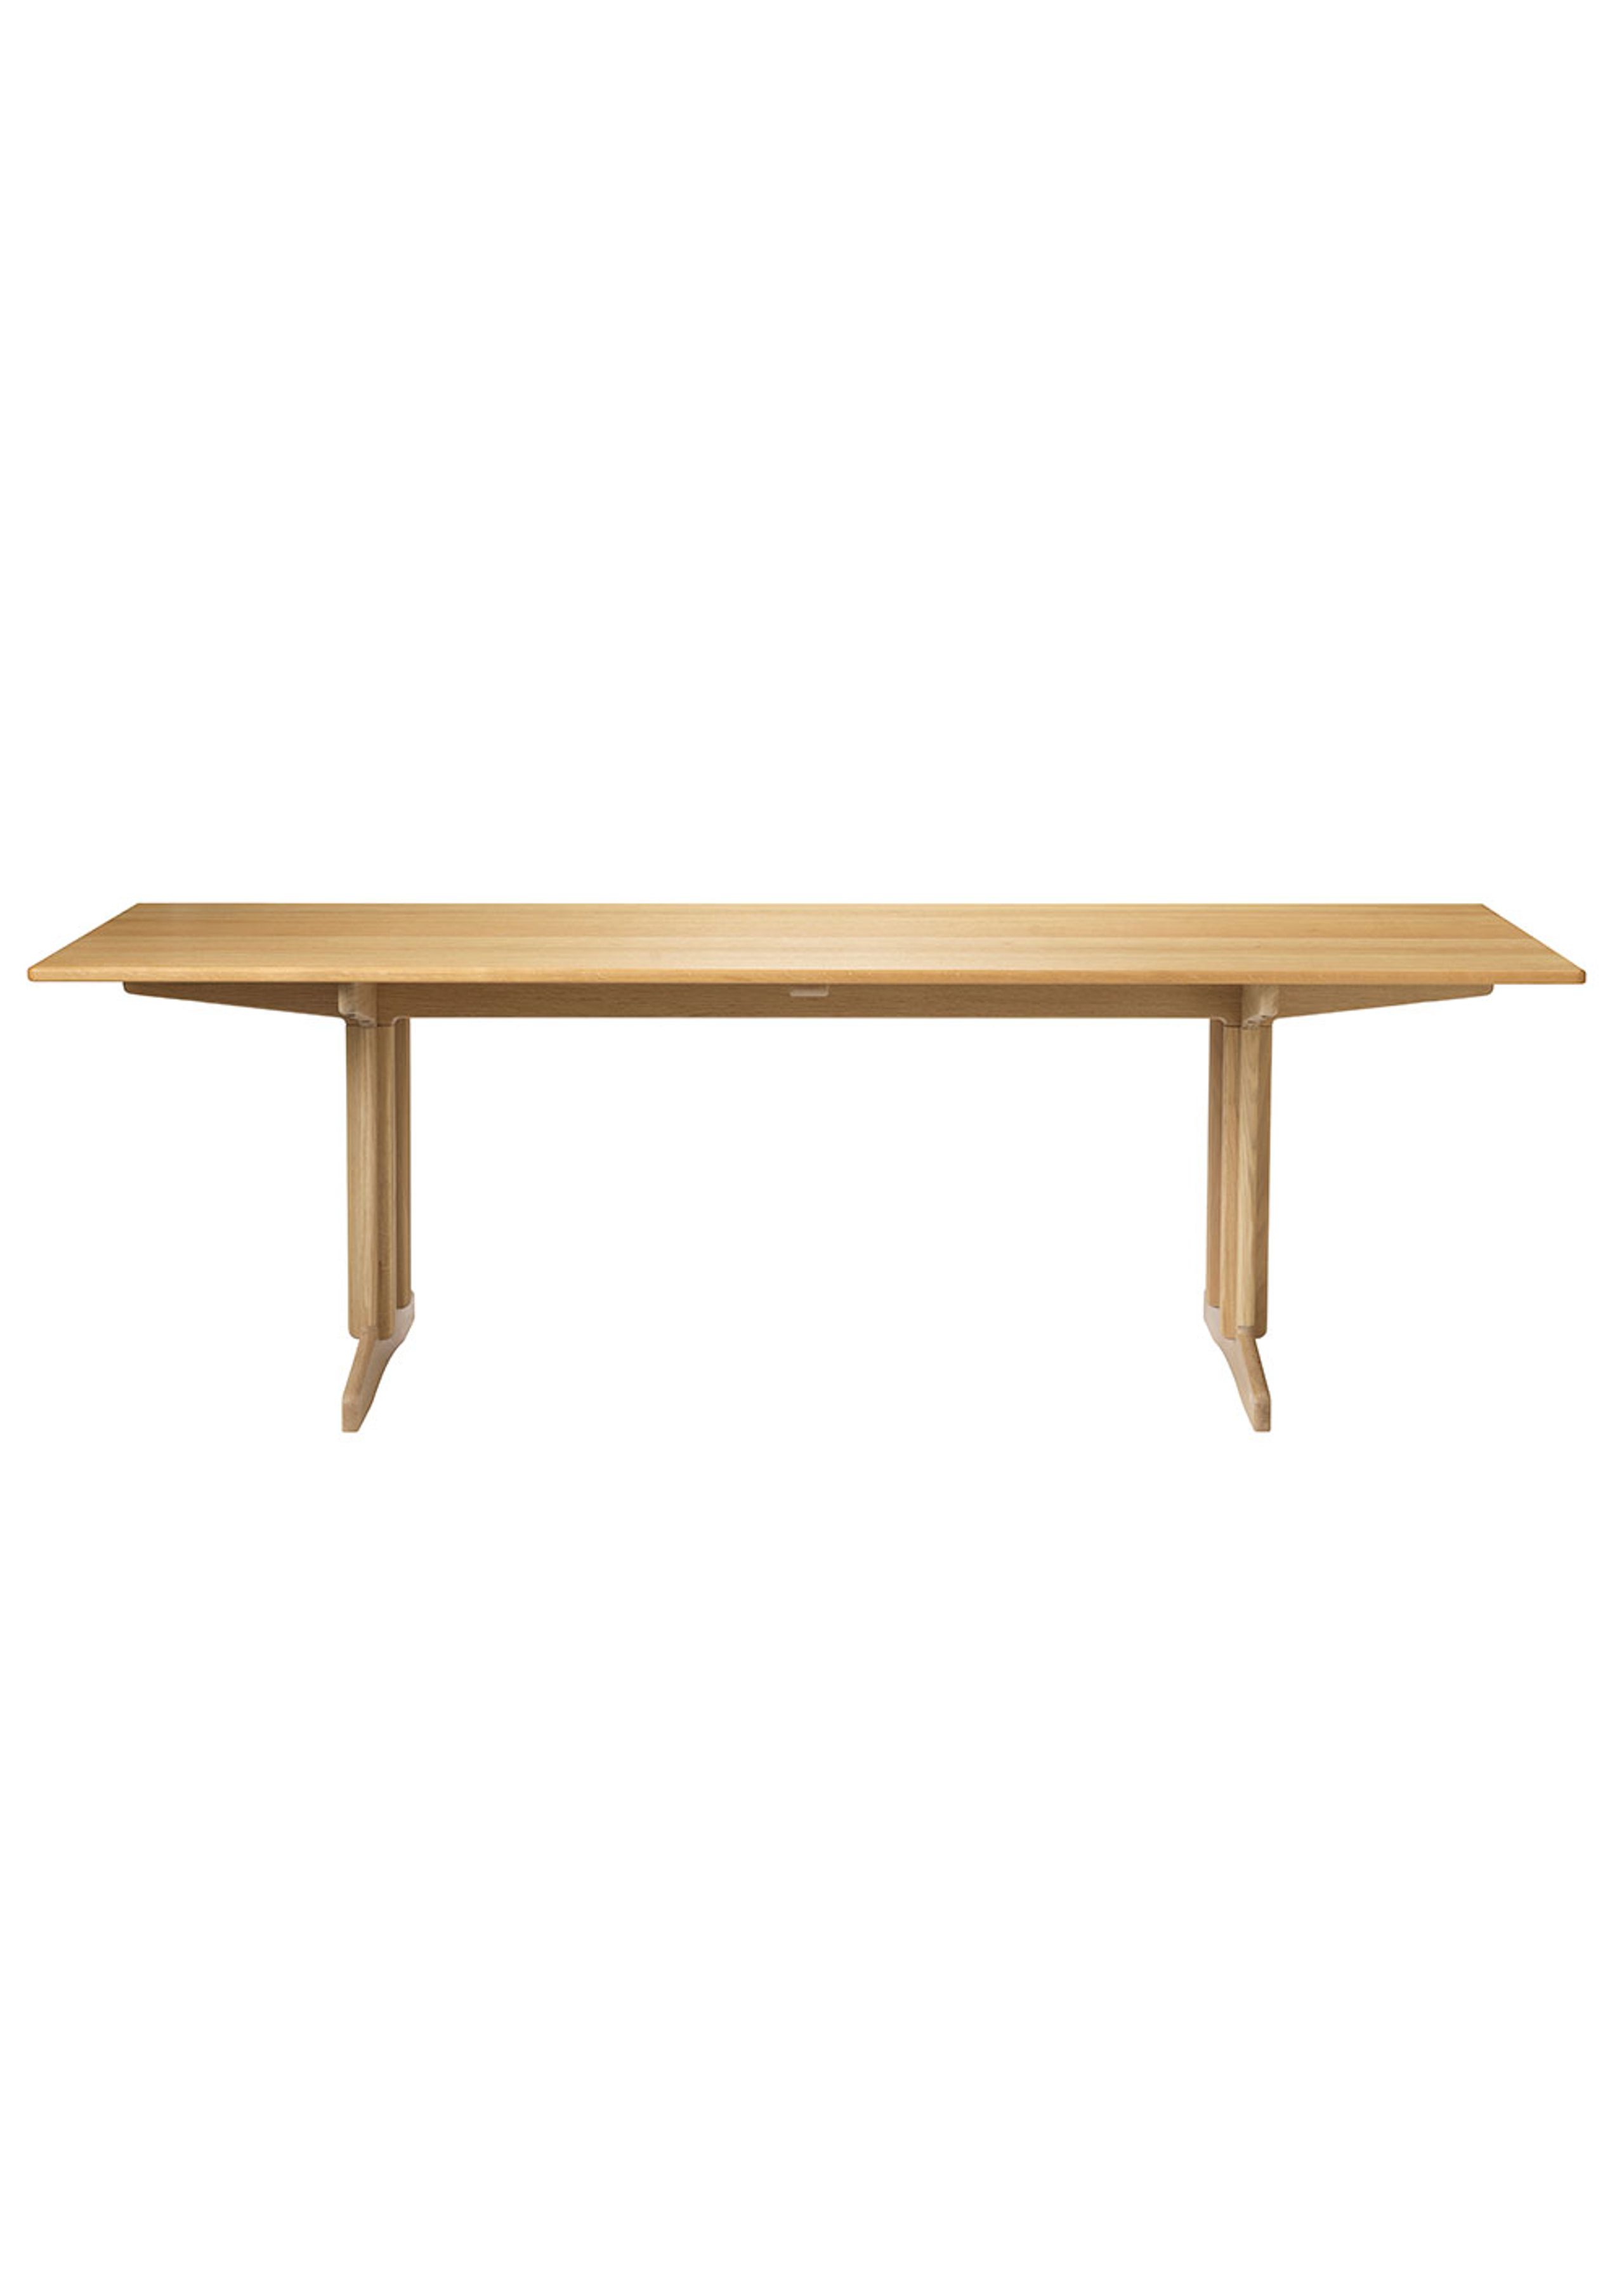 FDB Møbler / Furniture - Table à manger - C64 Shaker by Børge Mogensen - Egetræsfinér - L220